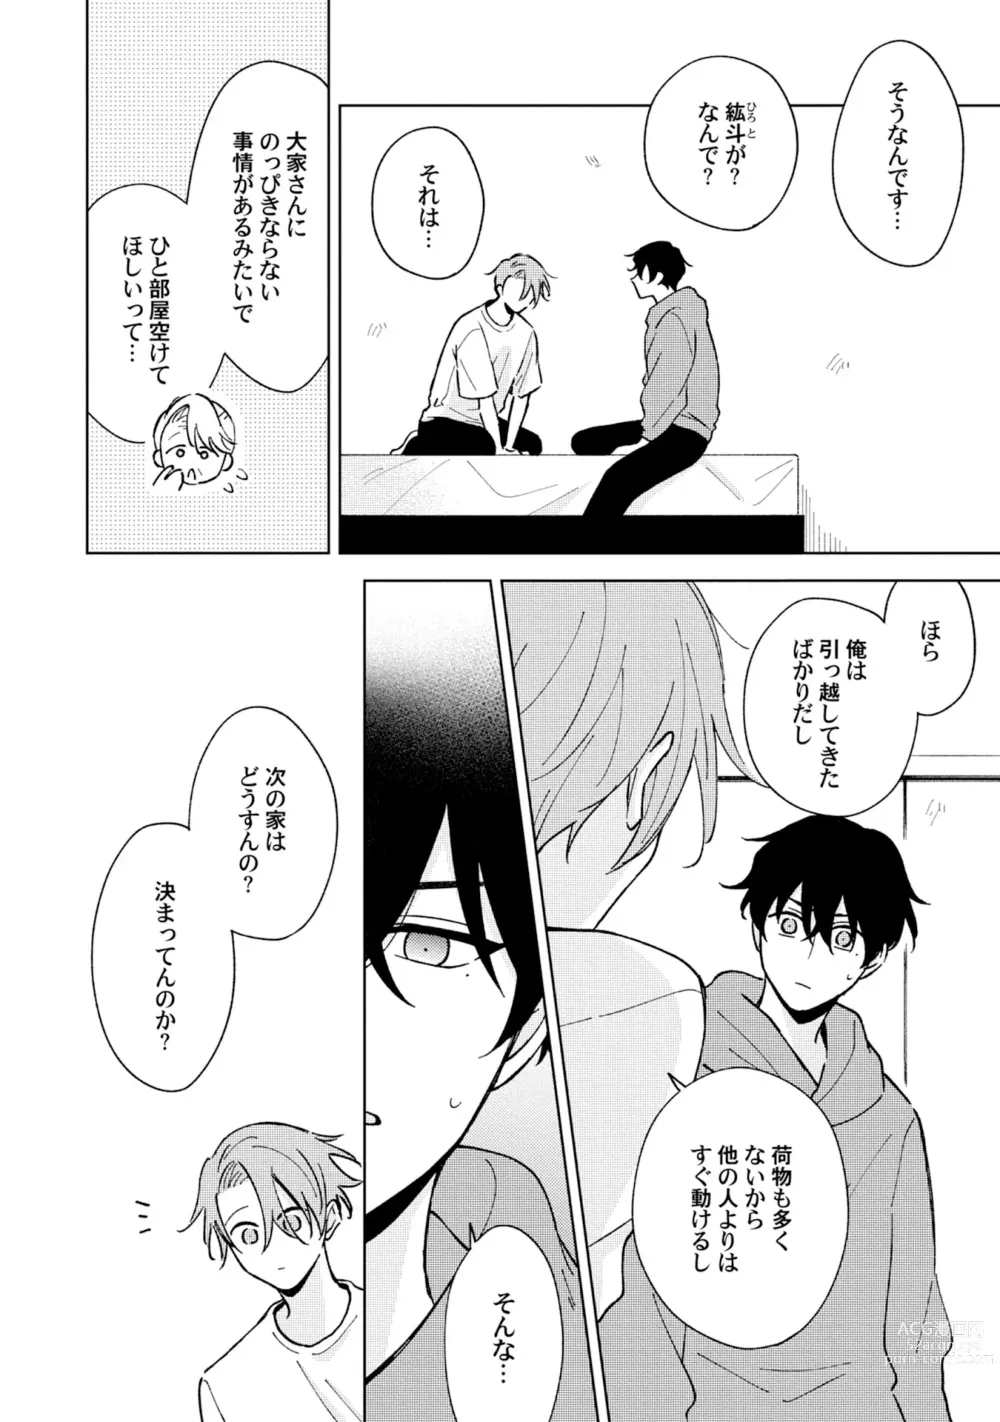 Page 4 of manga Toho 3-byou no Trouble Love Room 5